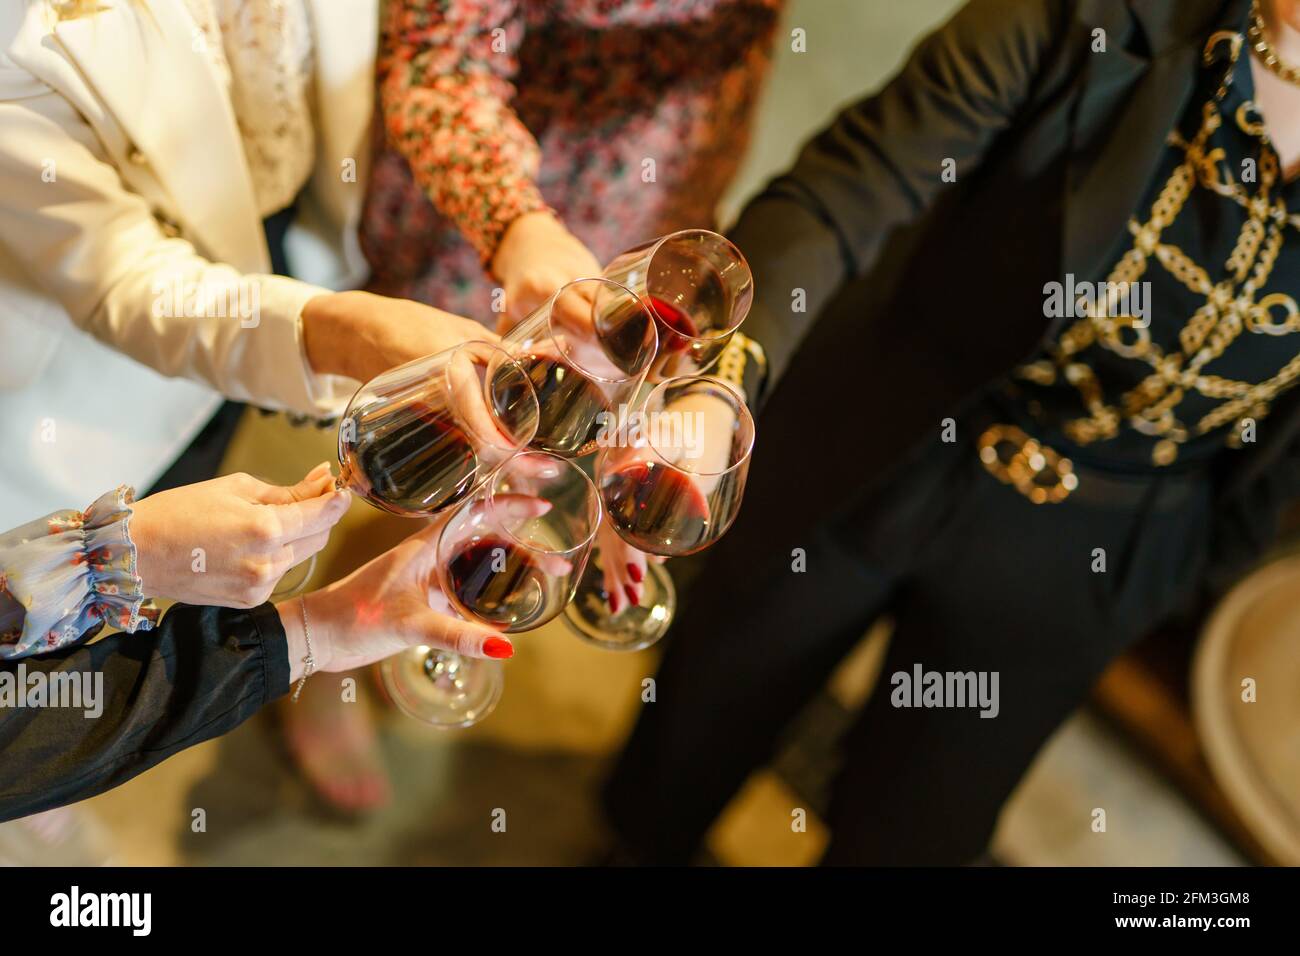 Gros plan sur les mains de femmes inconnues portant des lunettes de la dégustation de vin rouge Banque D'Images